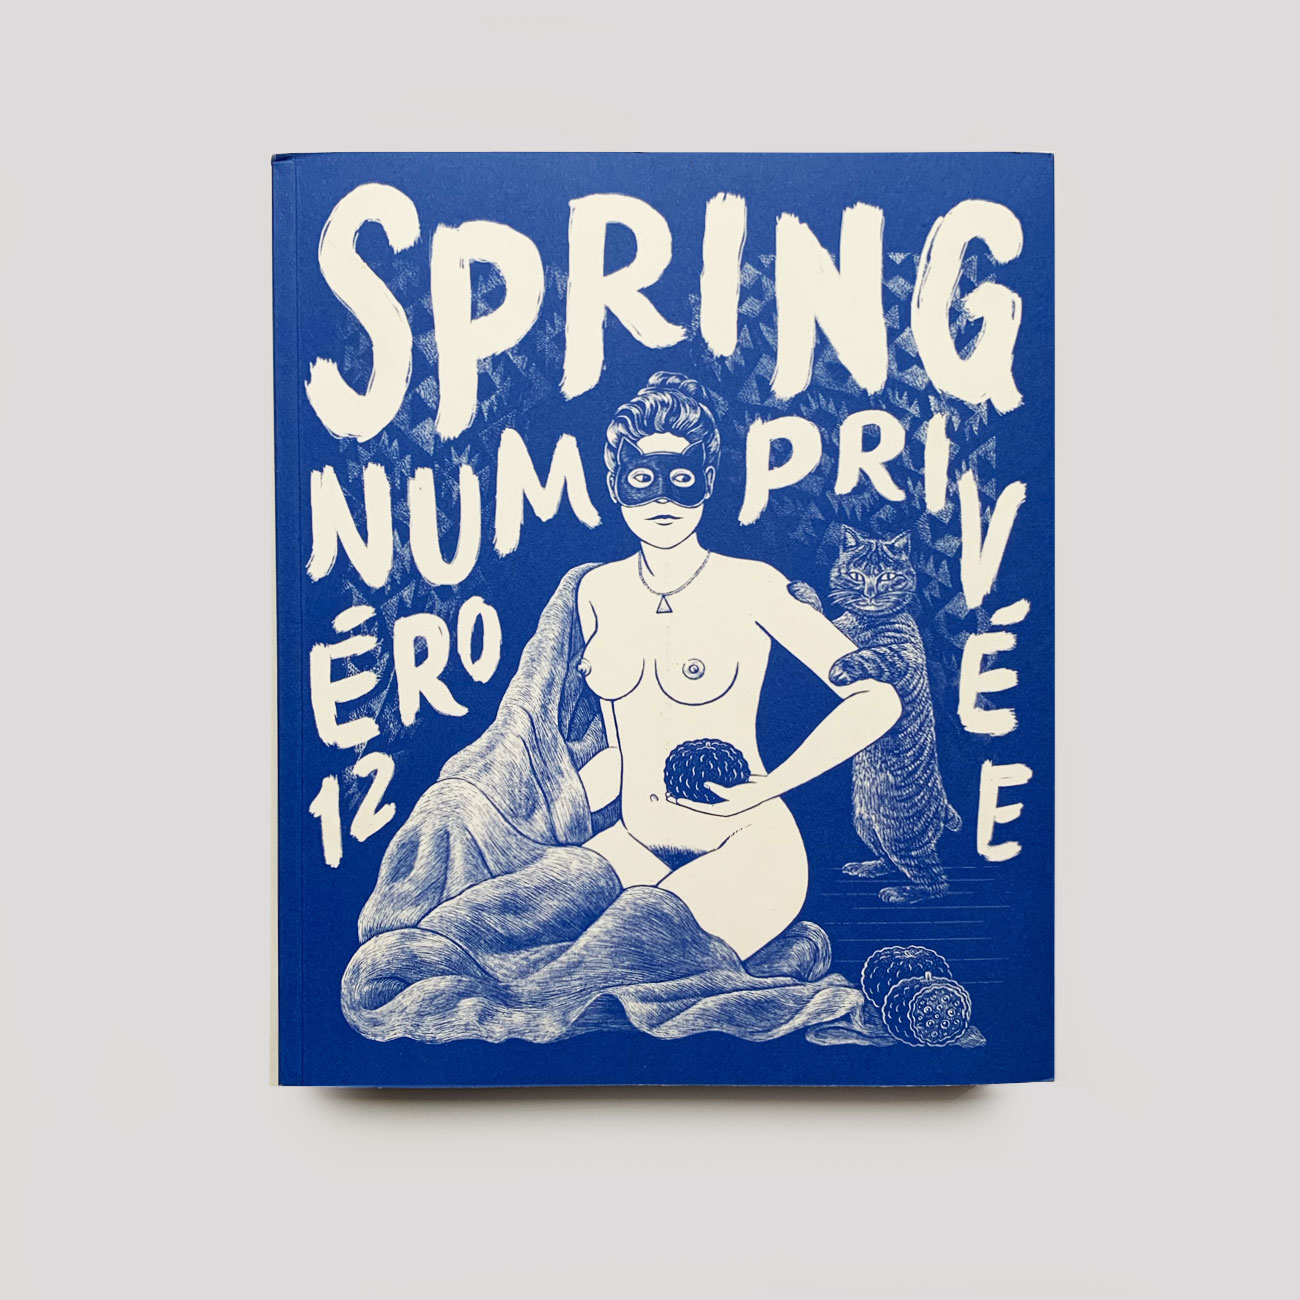 SPRING – Magazin – #12 Privée